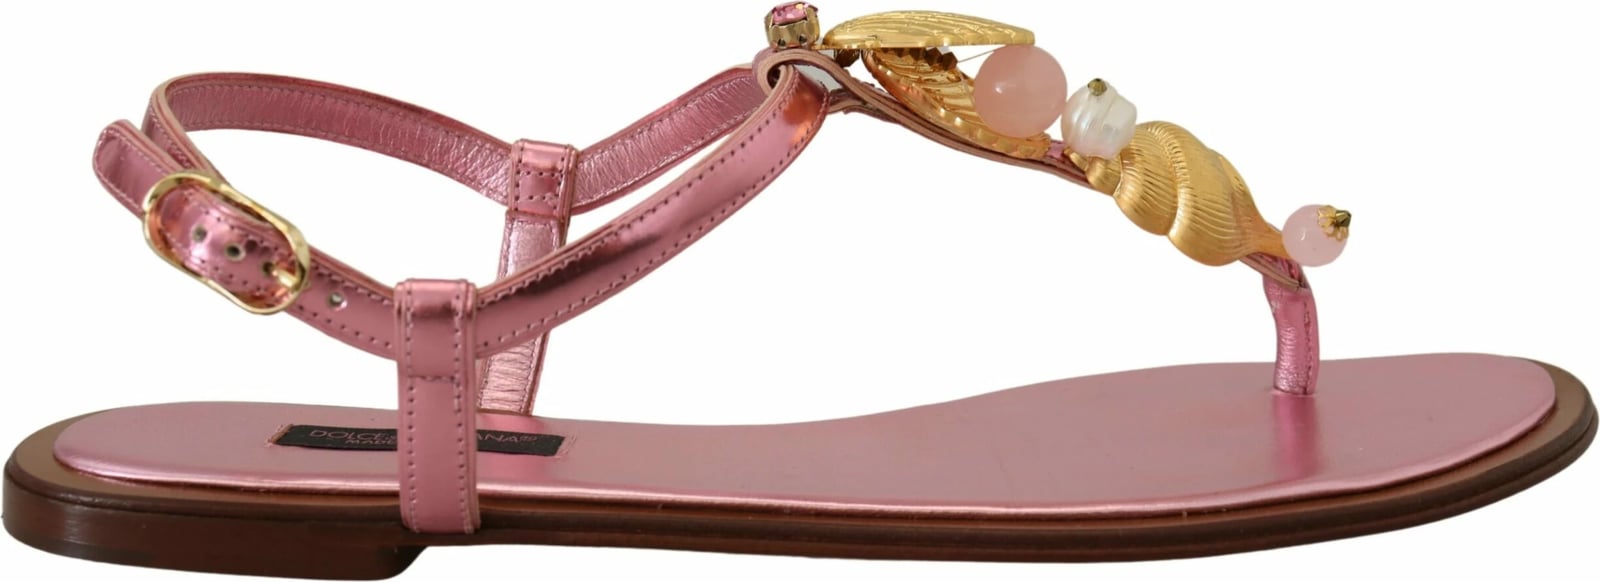 Sandale për femra Dolce & Gabbana, rozë